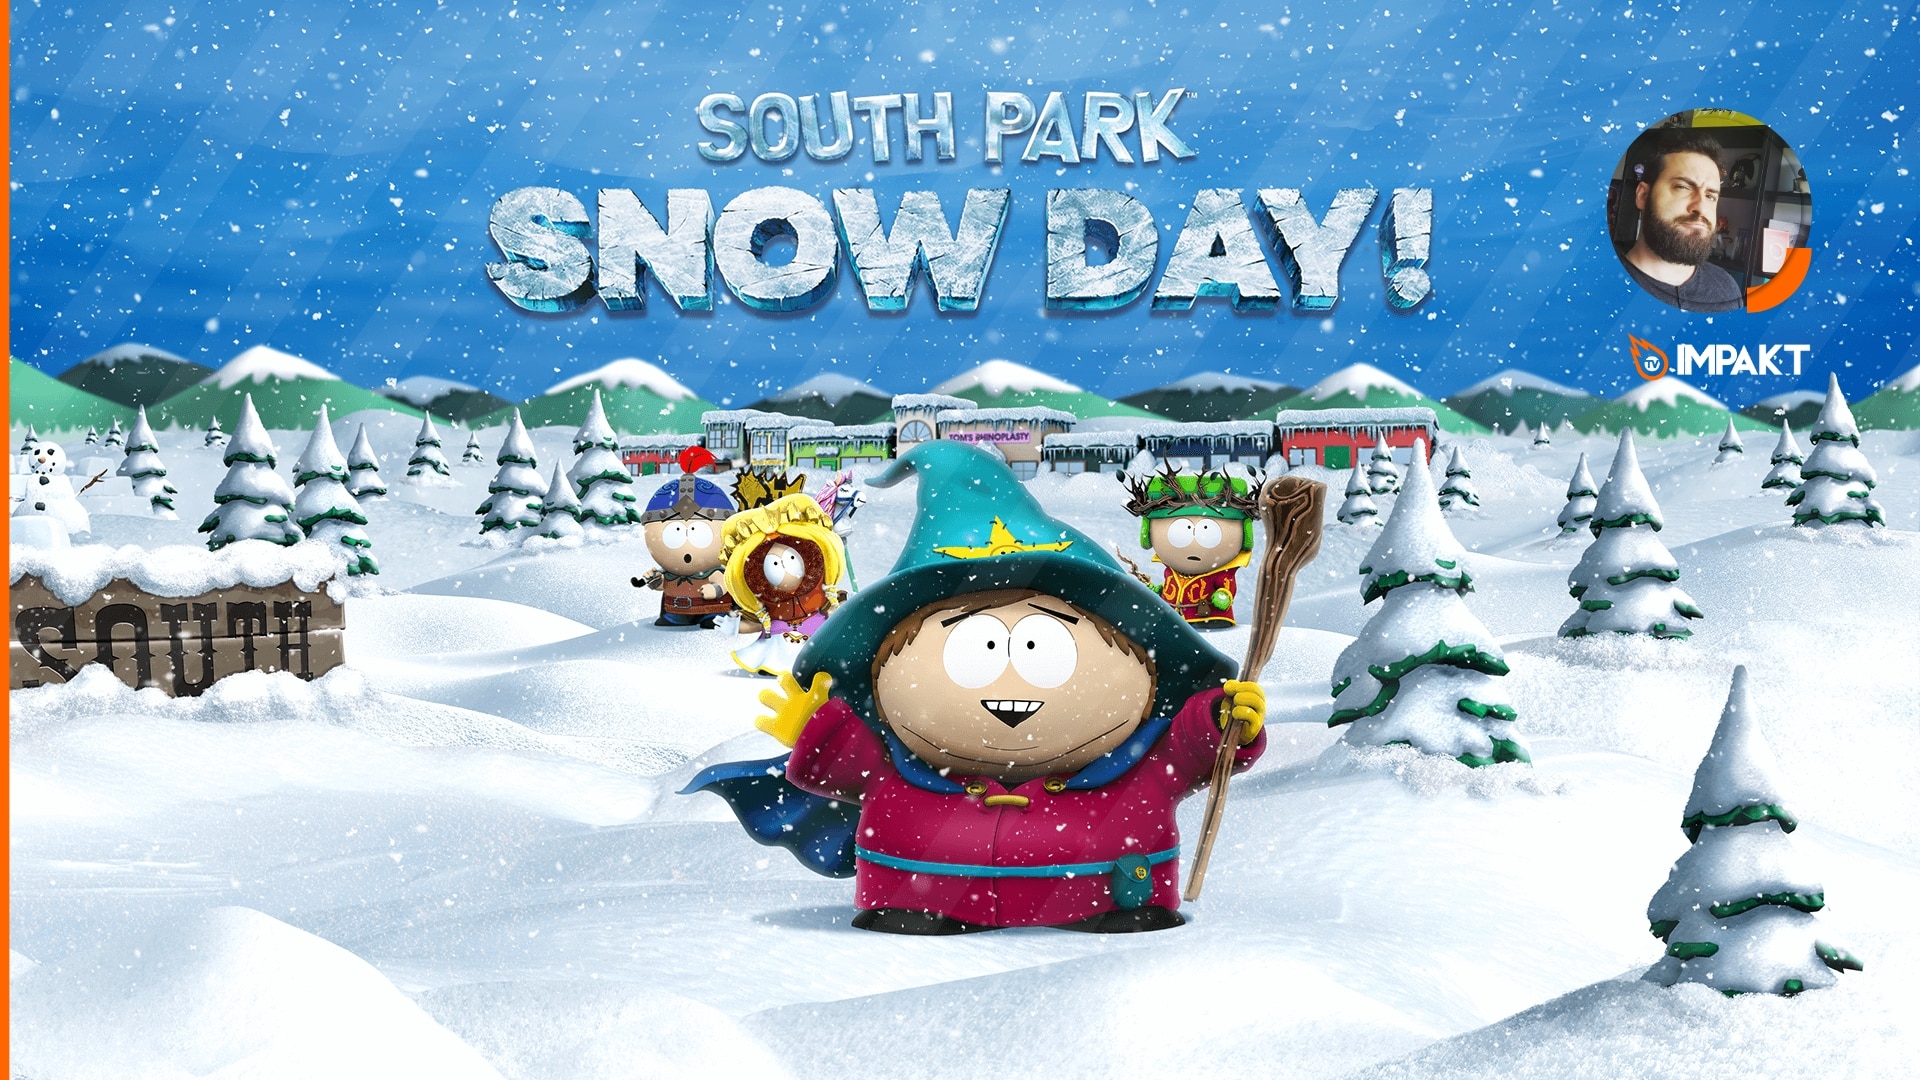 South Park: Snow Day! – Impressões Finais